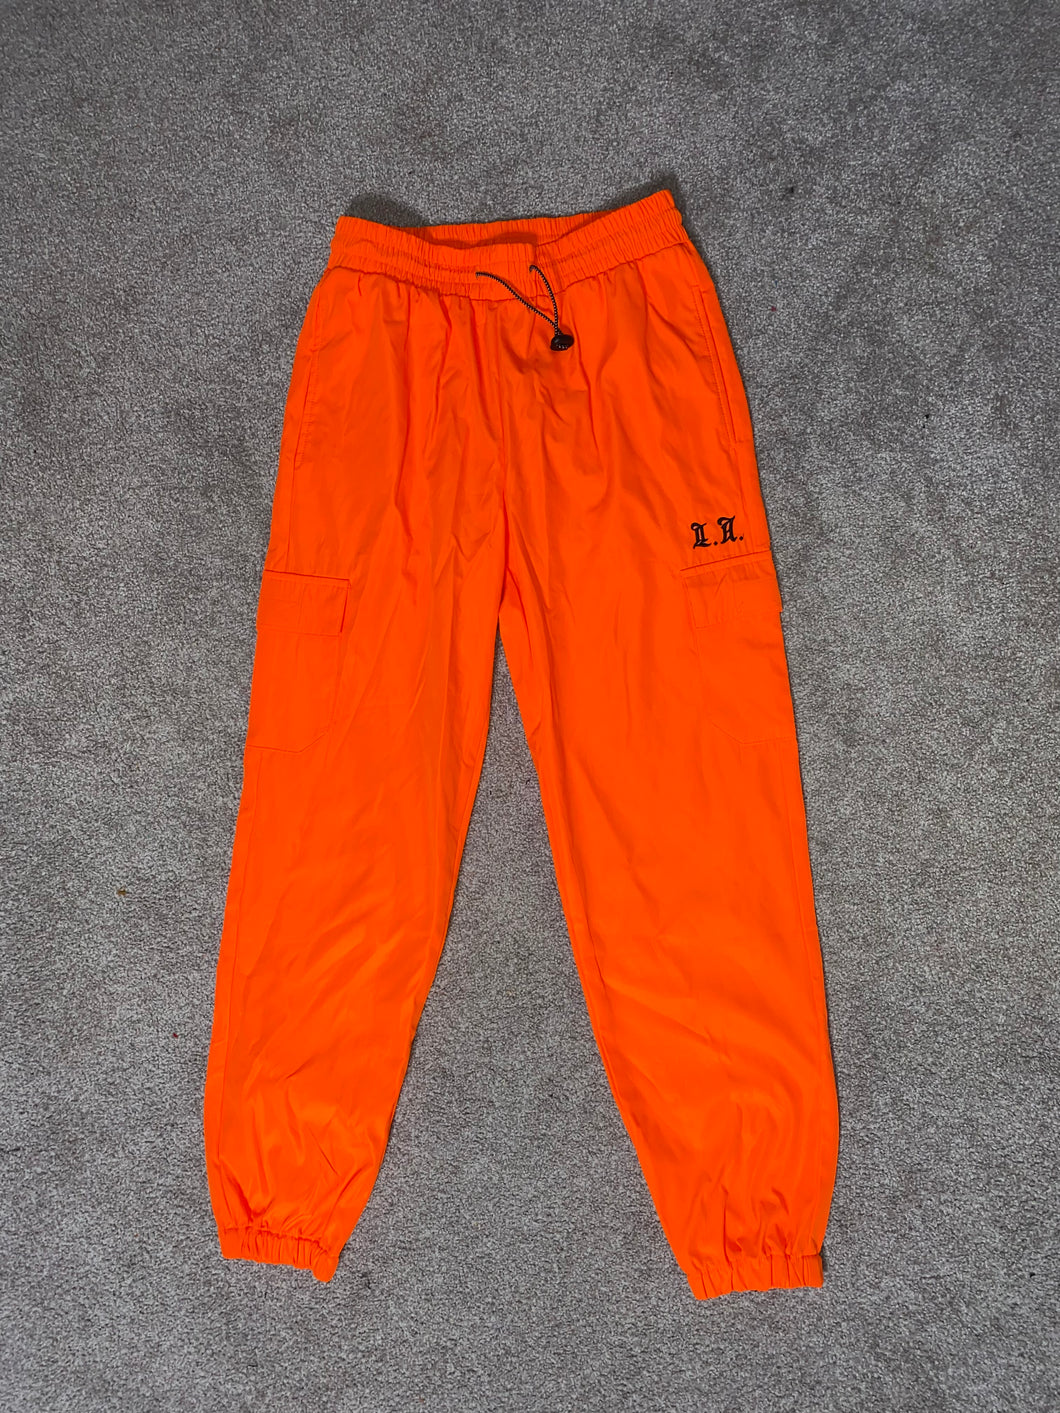 Orange Pants - Medium - Never Worn/Tags Still On